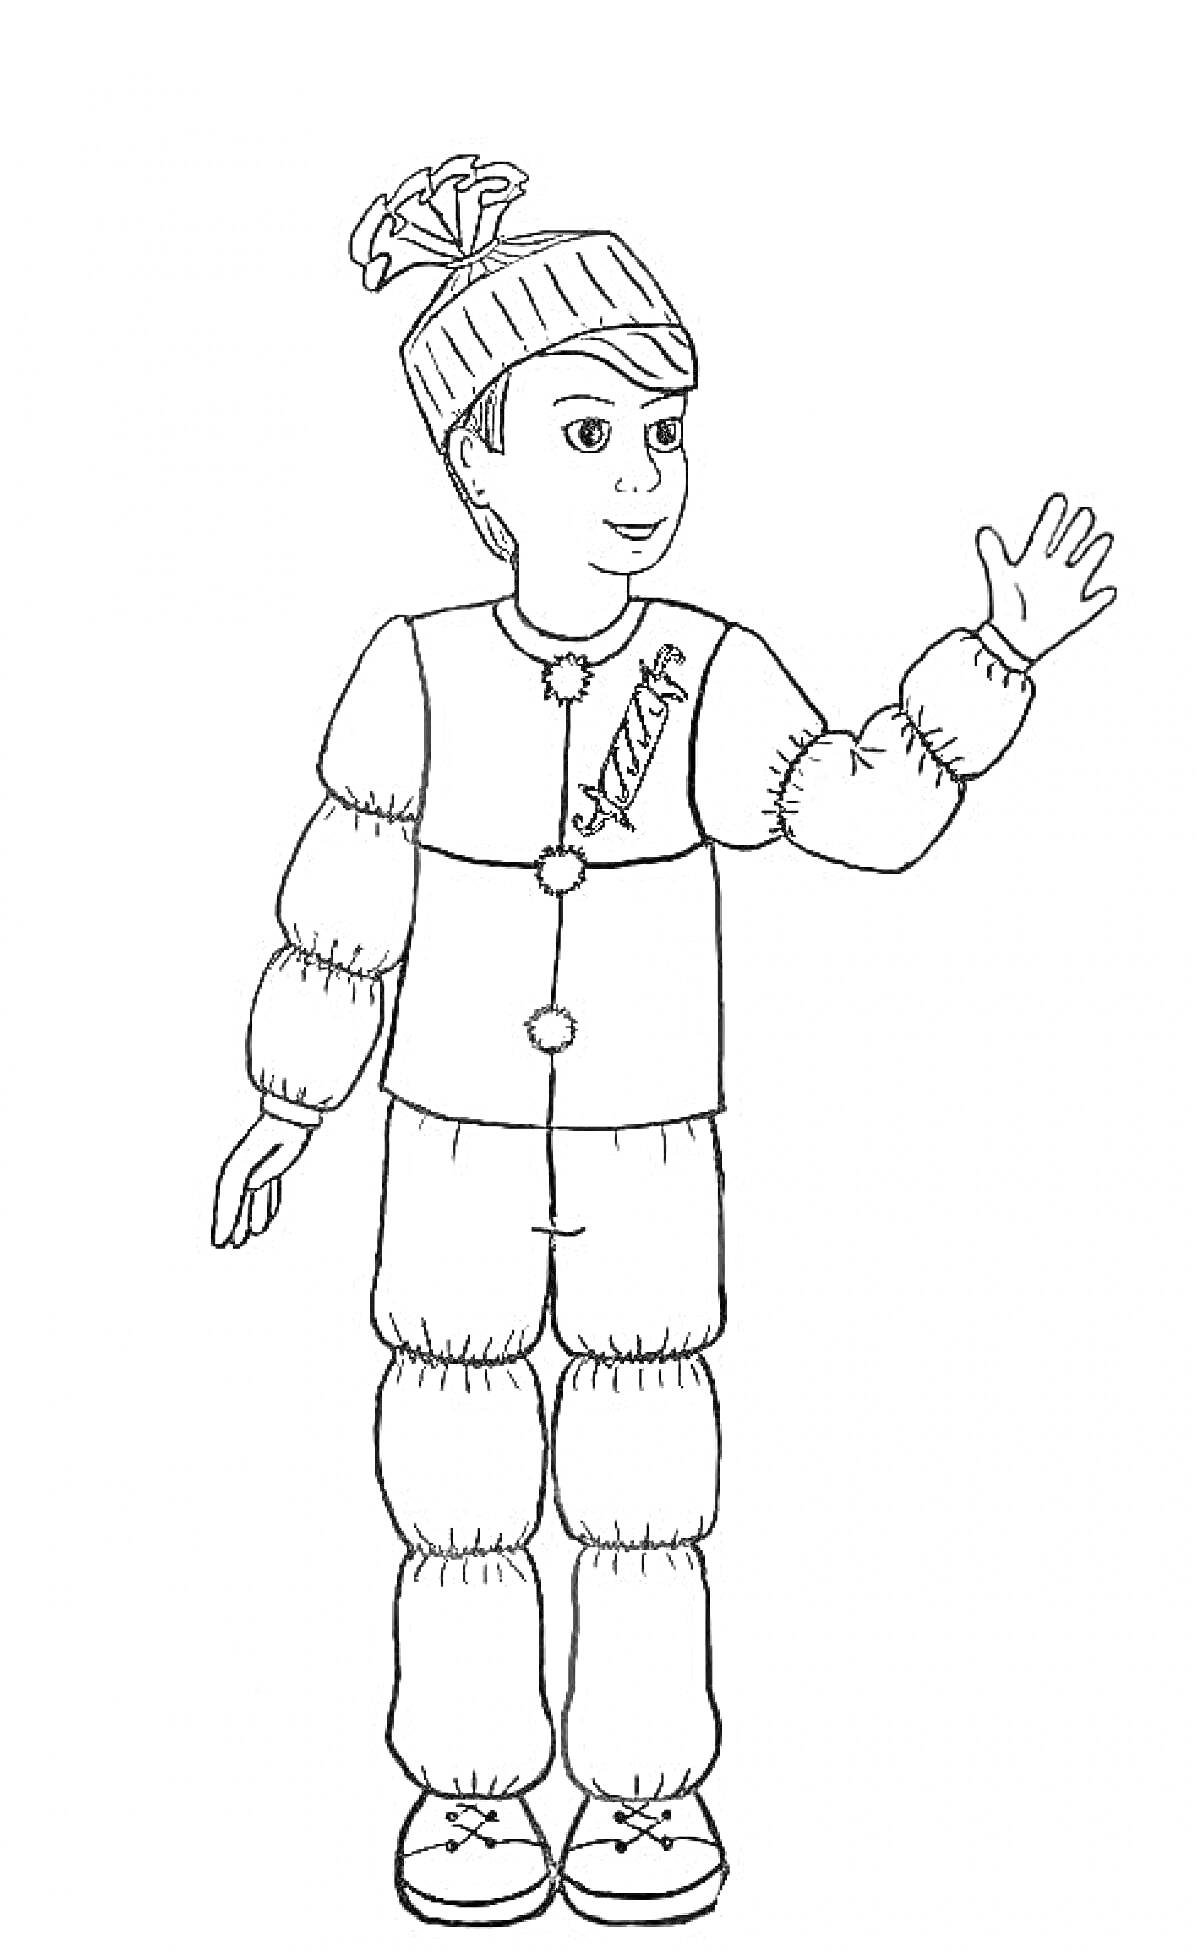 Человек в костюме хлопушки: шапка с бантом, пуговицы, рисунок хлопушки на куртке, рука поднята